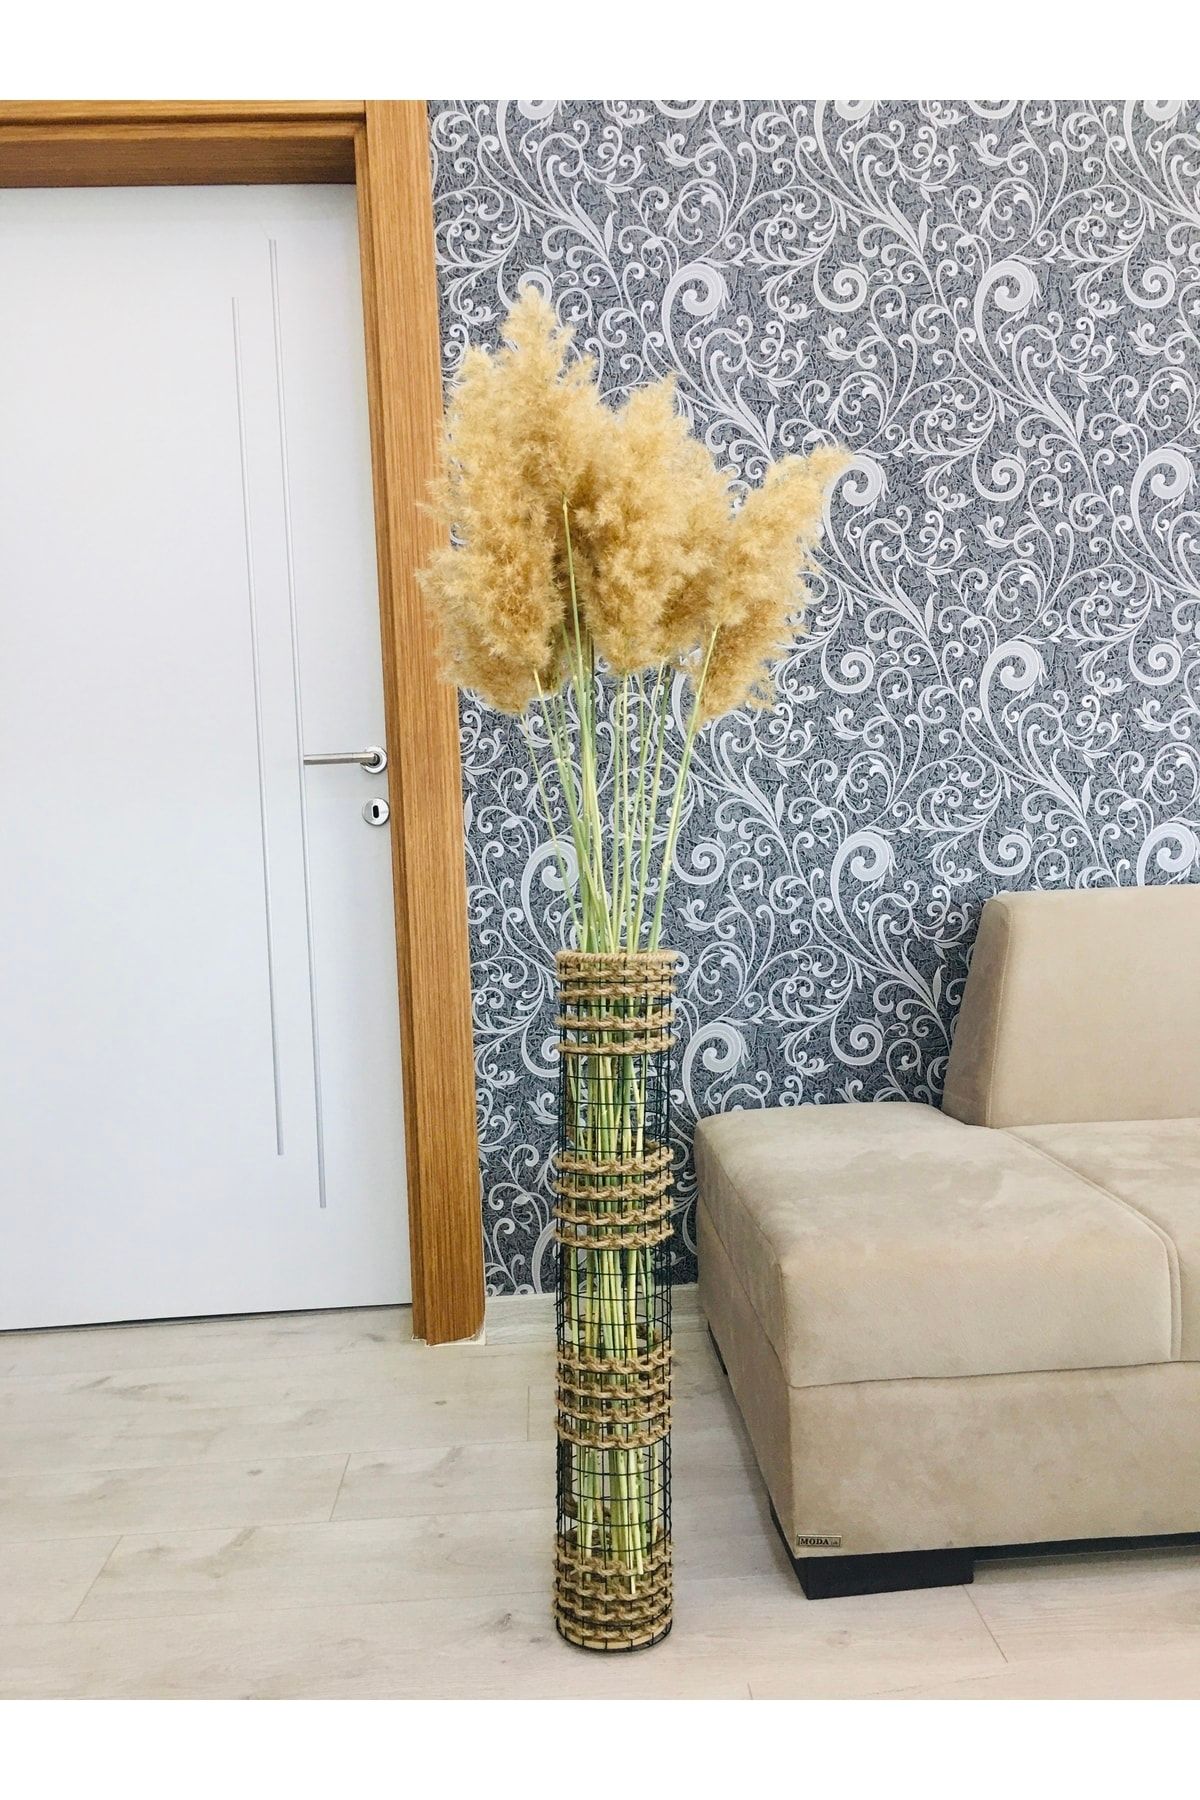 Asenya Hasır Örgü Vazo 70 Cm Üç Örgü Tasarım Hasır Örgülü Çiçeklik Yapay Çiçek Vazosu Dekoratif Saksı